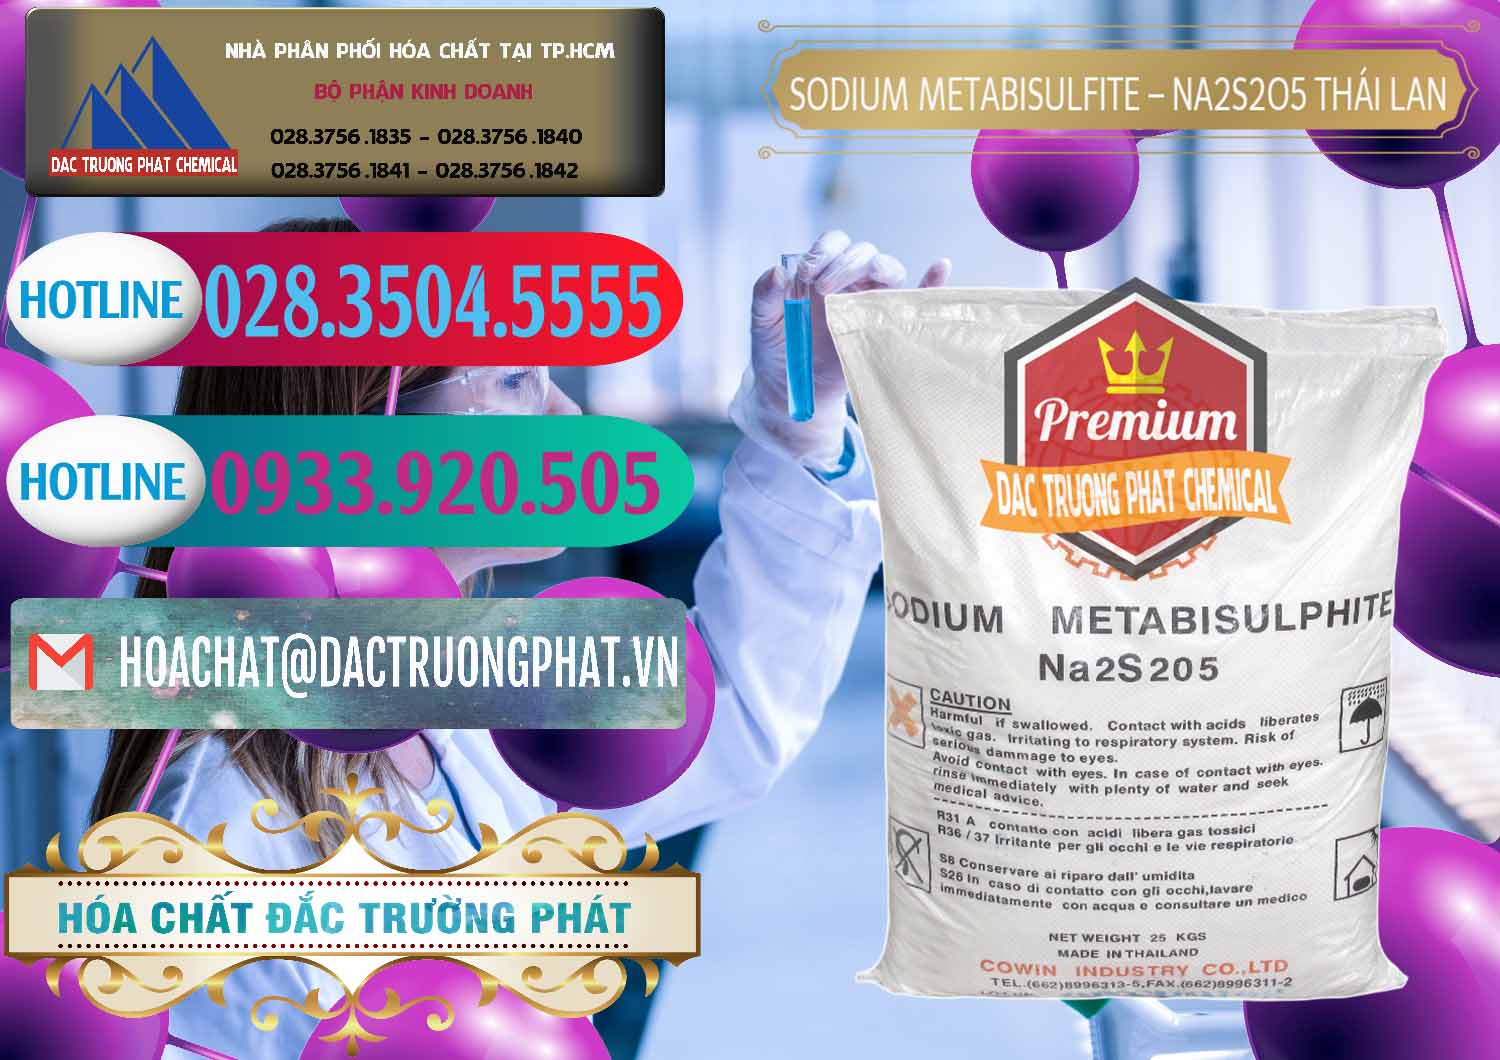 Cty chuyên cung ứng và bán Sodium Metabisulfite - NA2S2O5 Thái Lan Cowin - 0145 - Chuyên cung cấp ( kinh doanh ) hóa chất tại TP.HCM - truongphat.vn